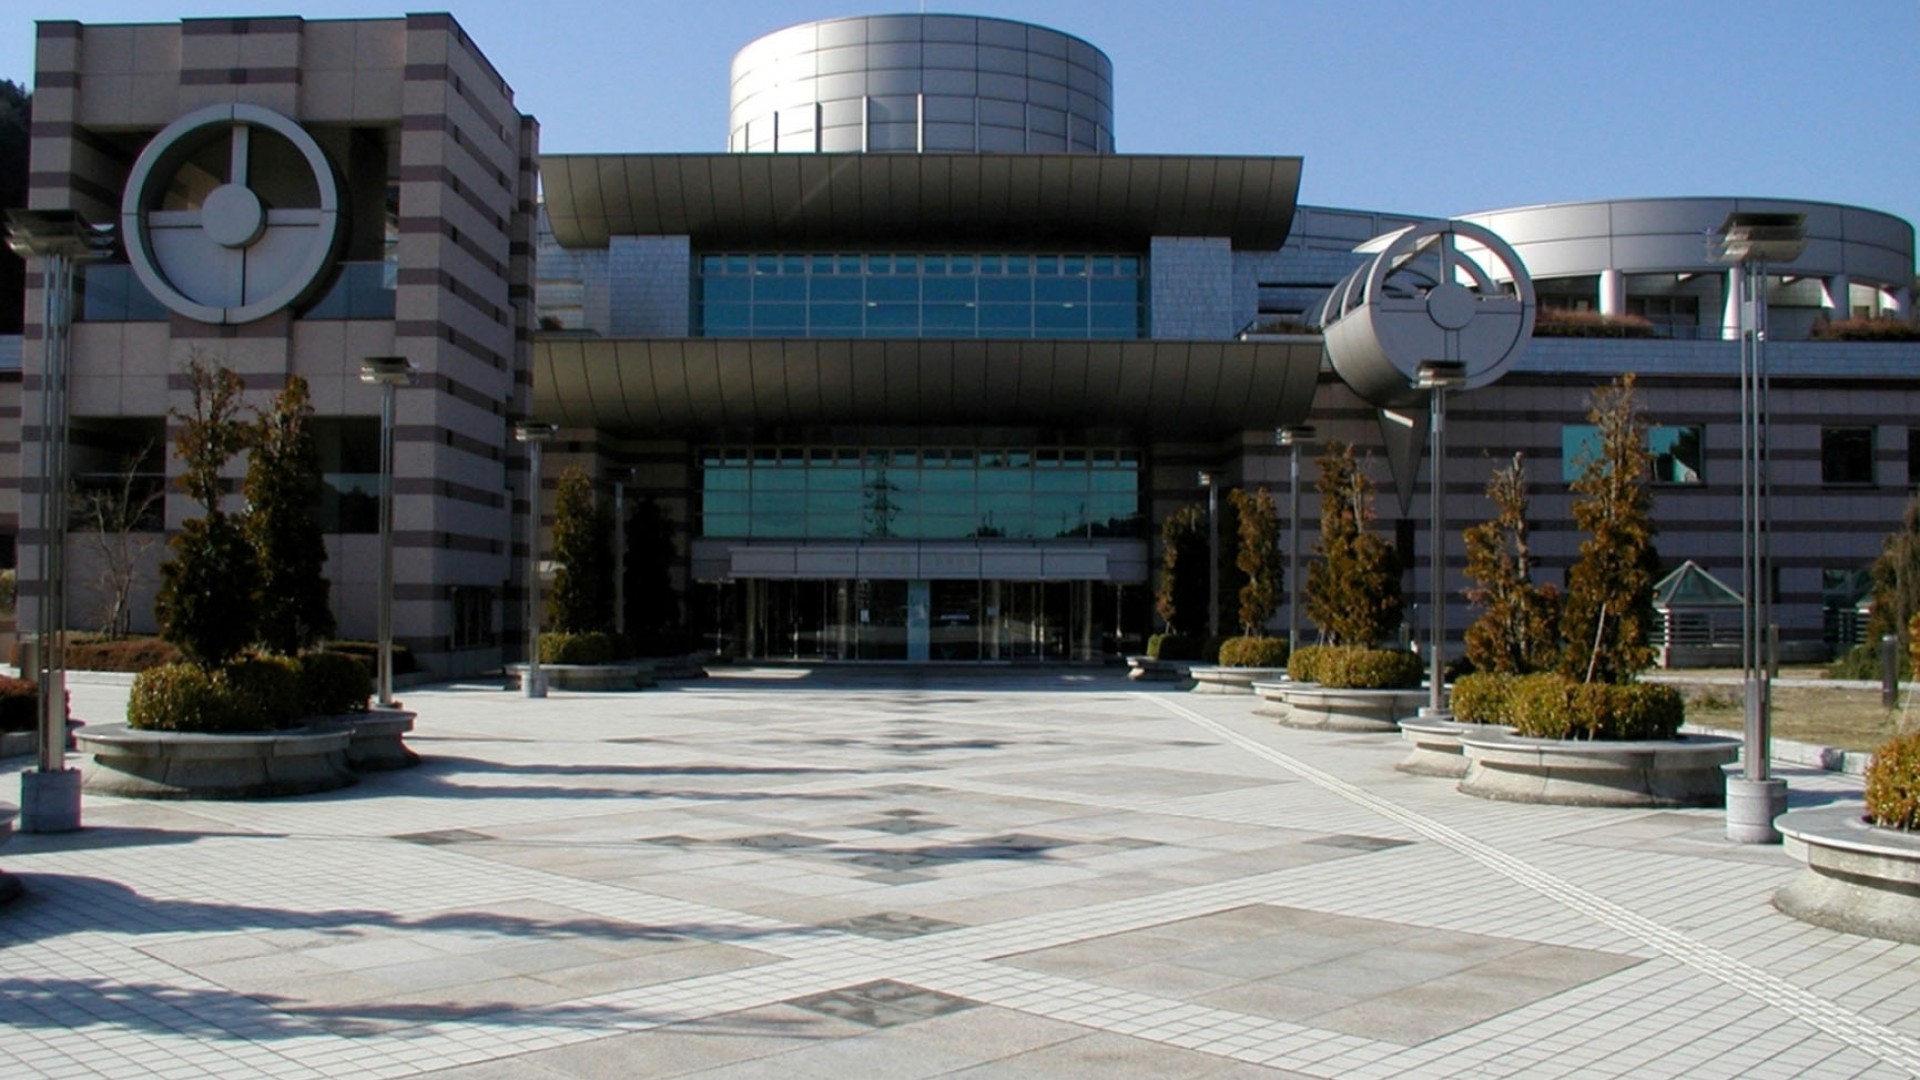 Musée préfectoral d'histoire naturelle de Kanagawa